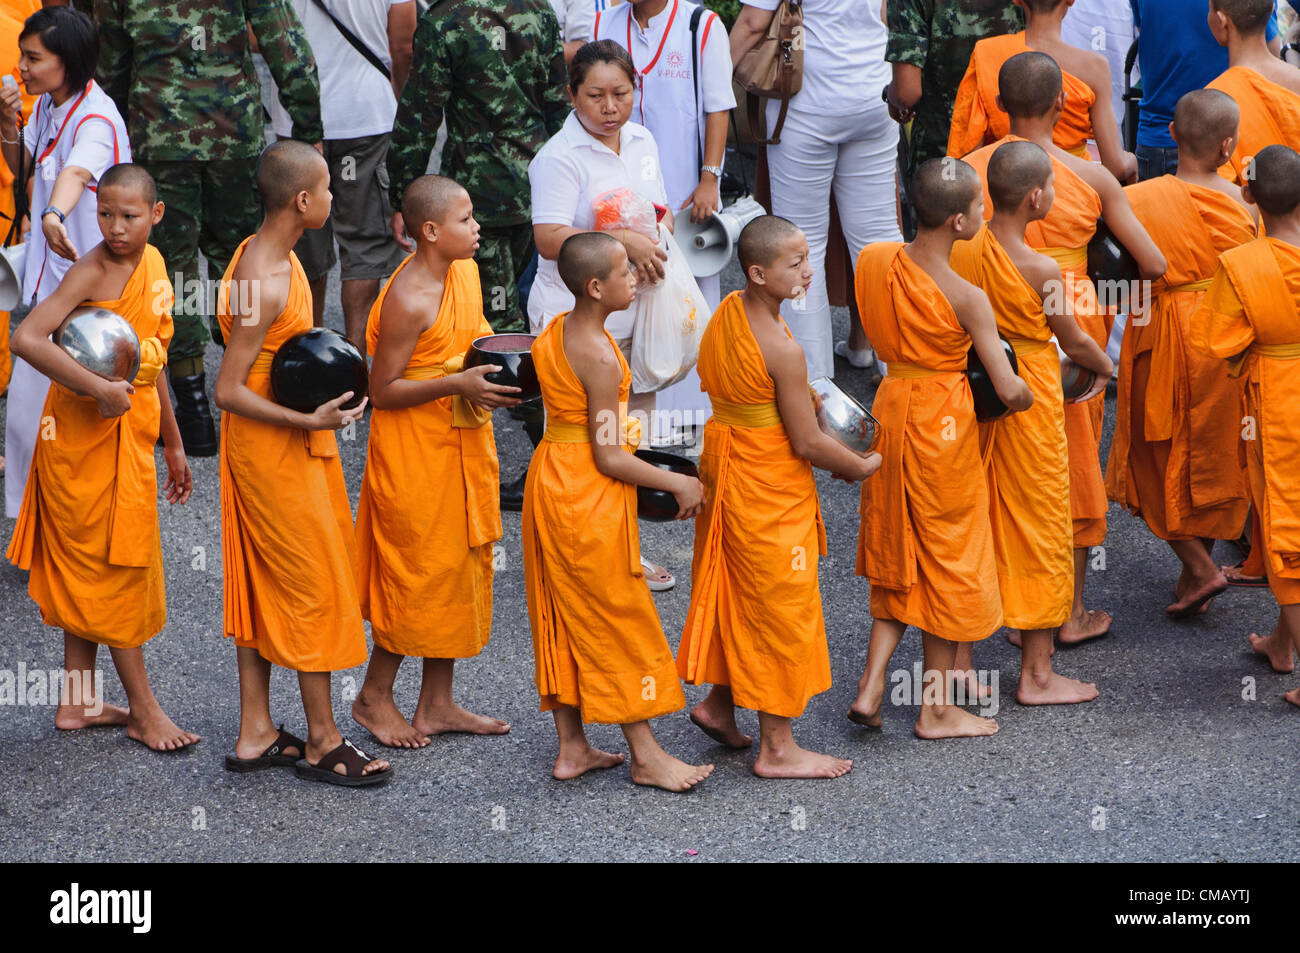 Algunos de los 12.600 monjes en una ceremonia de limosnas en el centro de Bangkok, Tailandia el 7 de julio de 2012. Estos monjes están celebrando los 2.600 años de la iluminación del Buda. Foto de stock